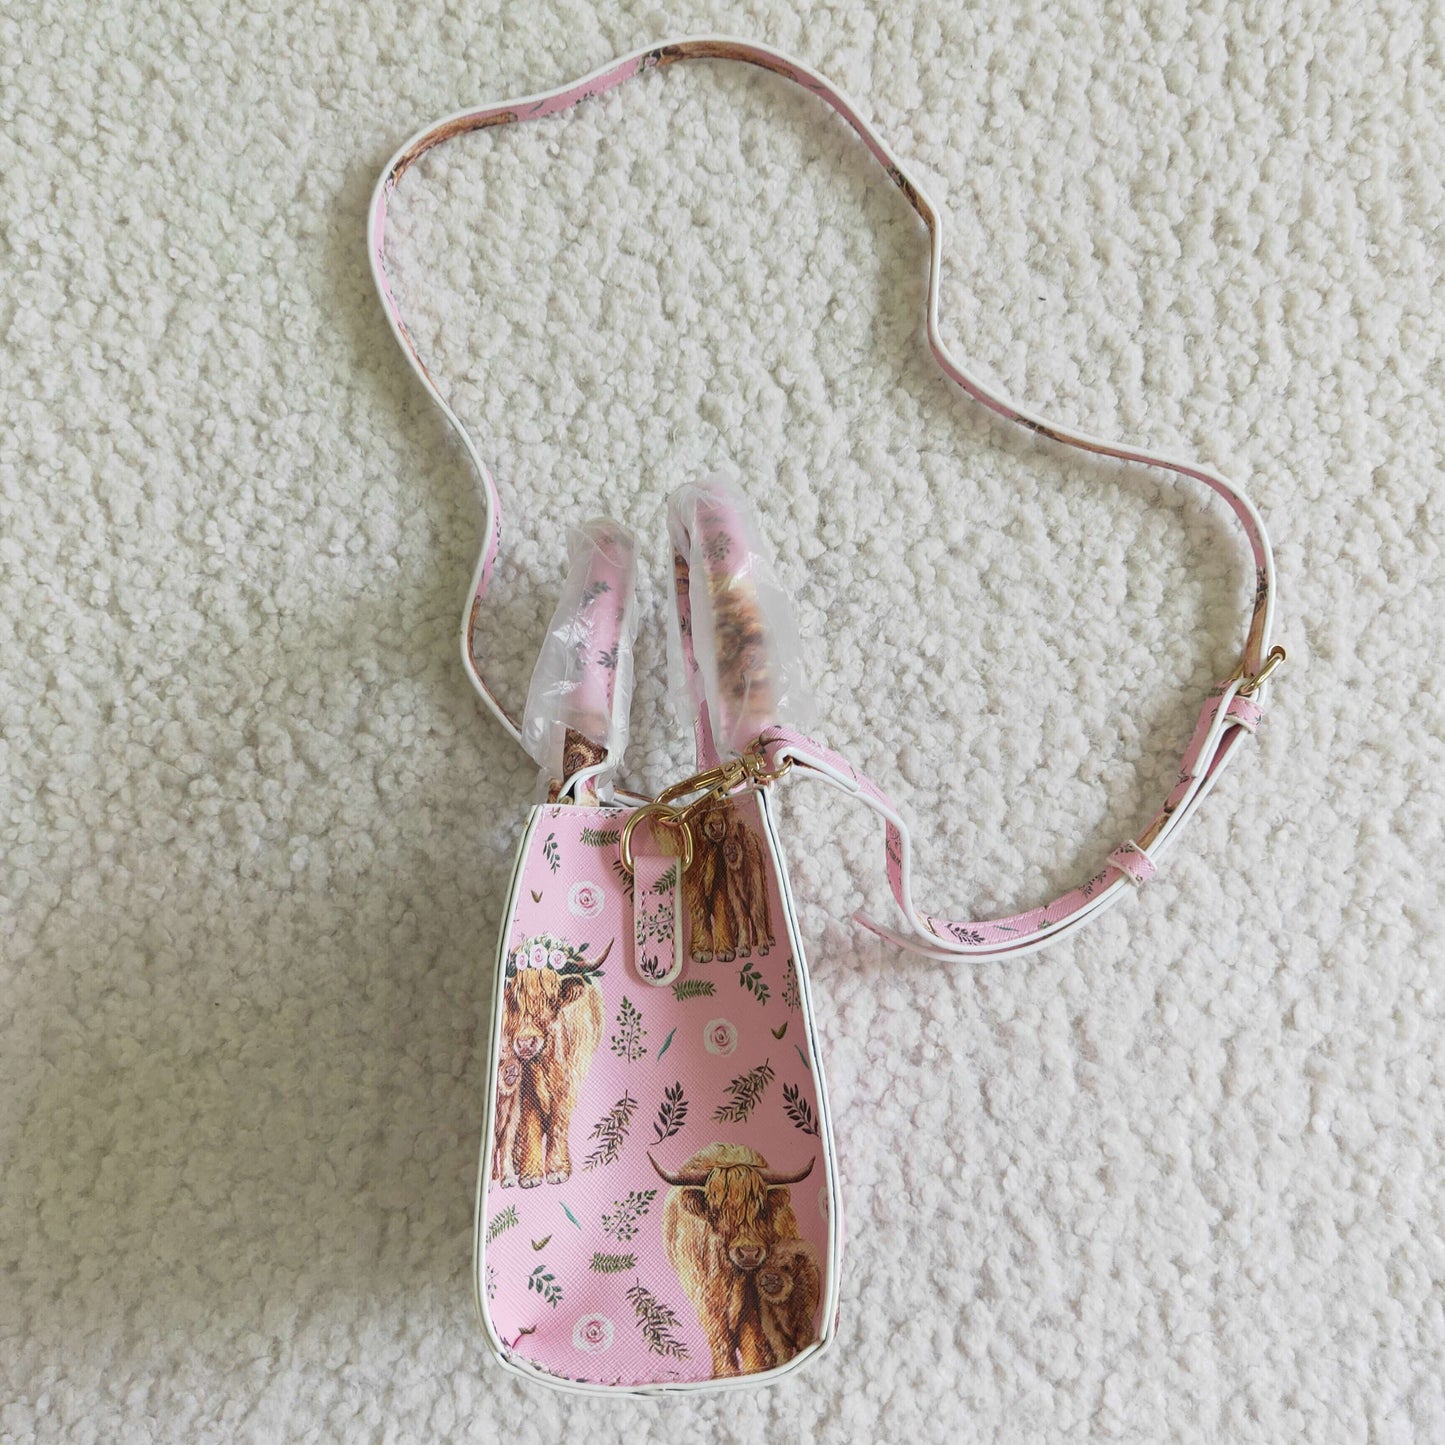 BA0018 Pink Cow Girl Small Bag Satchel Handbag